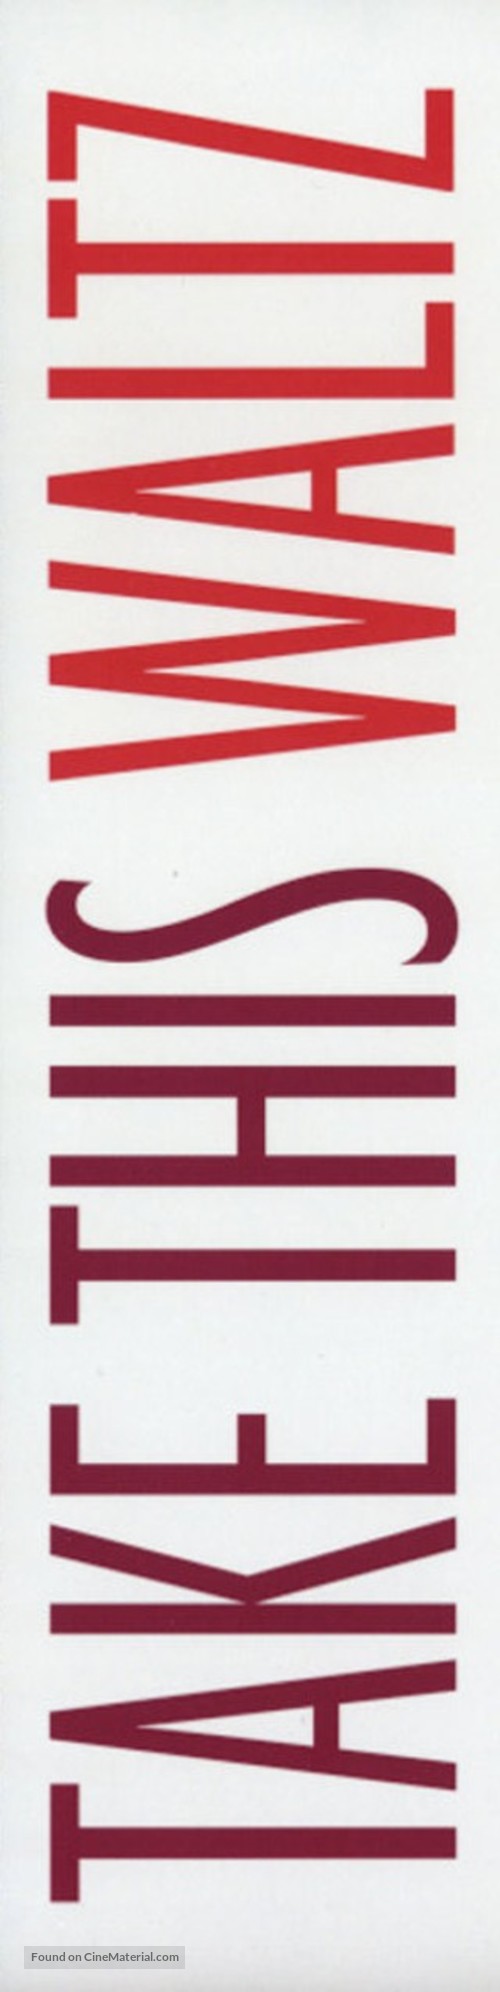 Take This Waltz - Canadian Logo